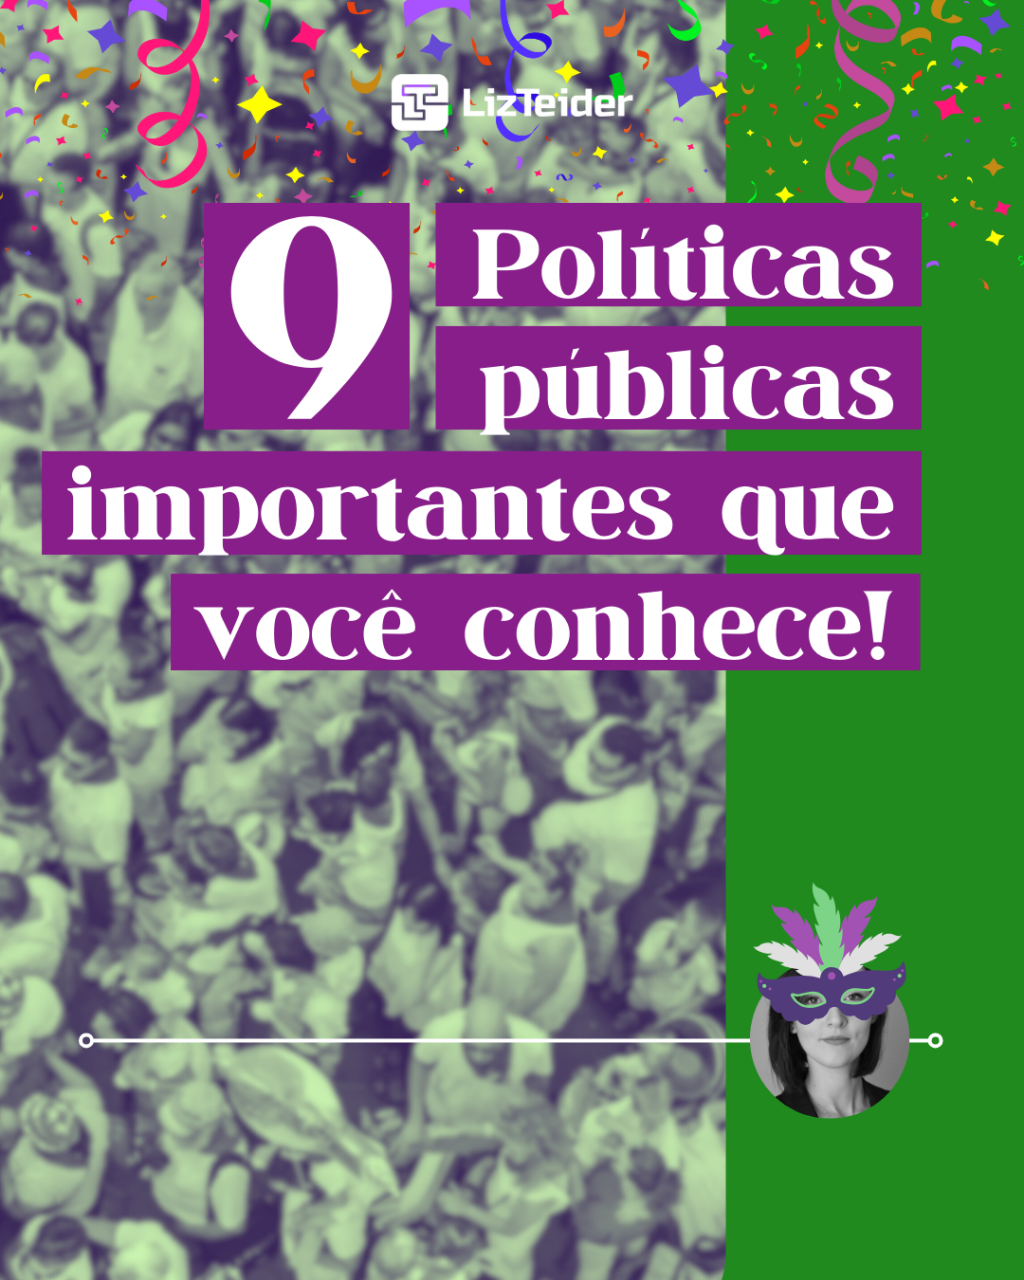 9 políticas públicas importantes que você conhece!